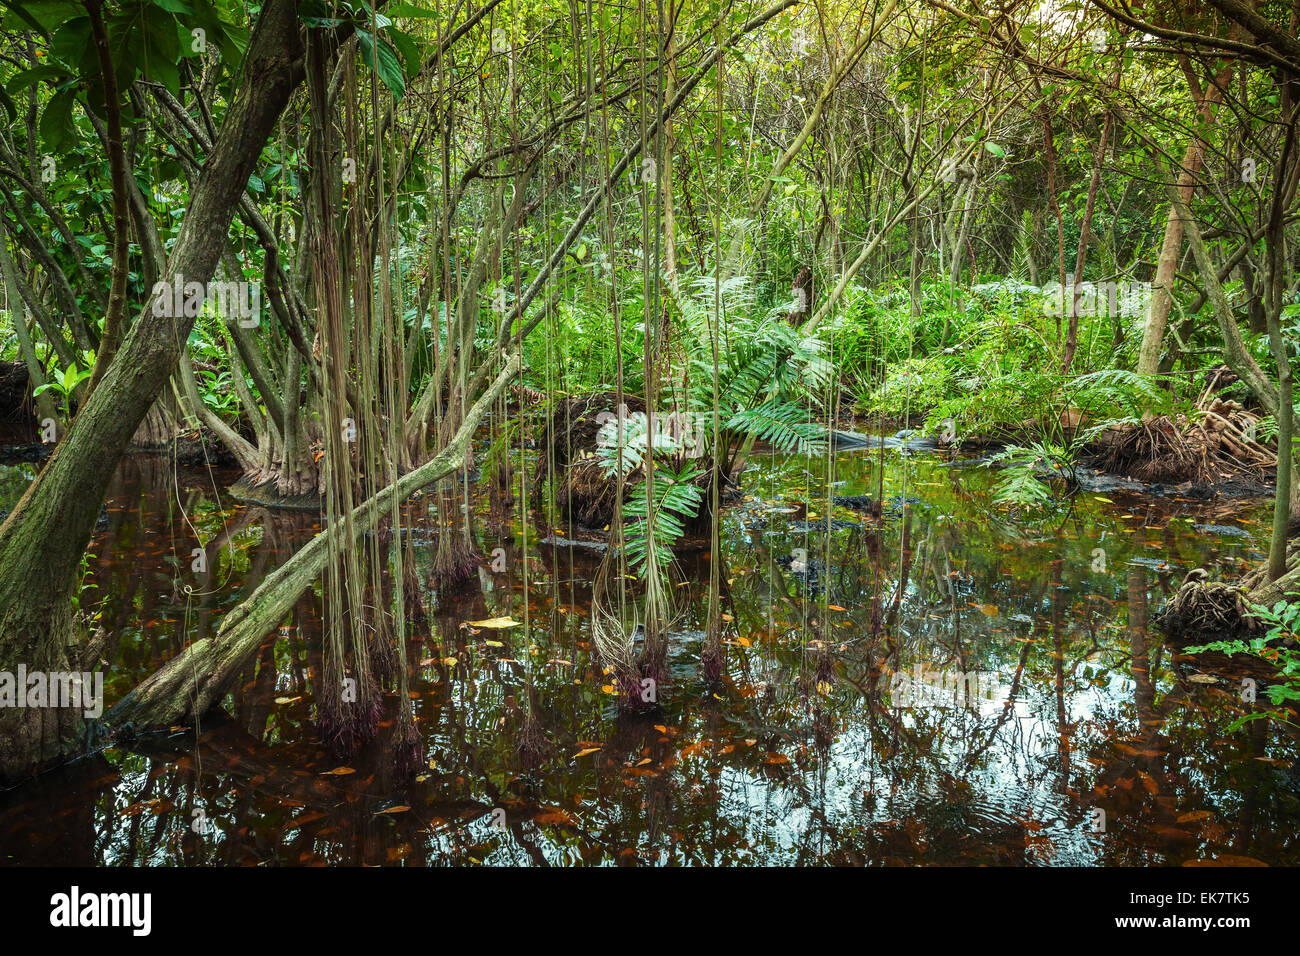 Paysage de forêt tropicale avec des arbres de la mangrove dans l'eau Banque D'Images